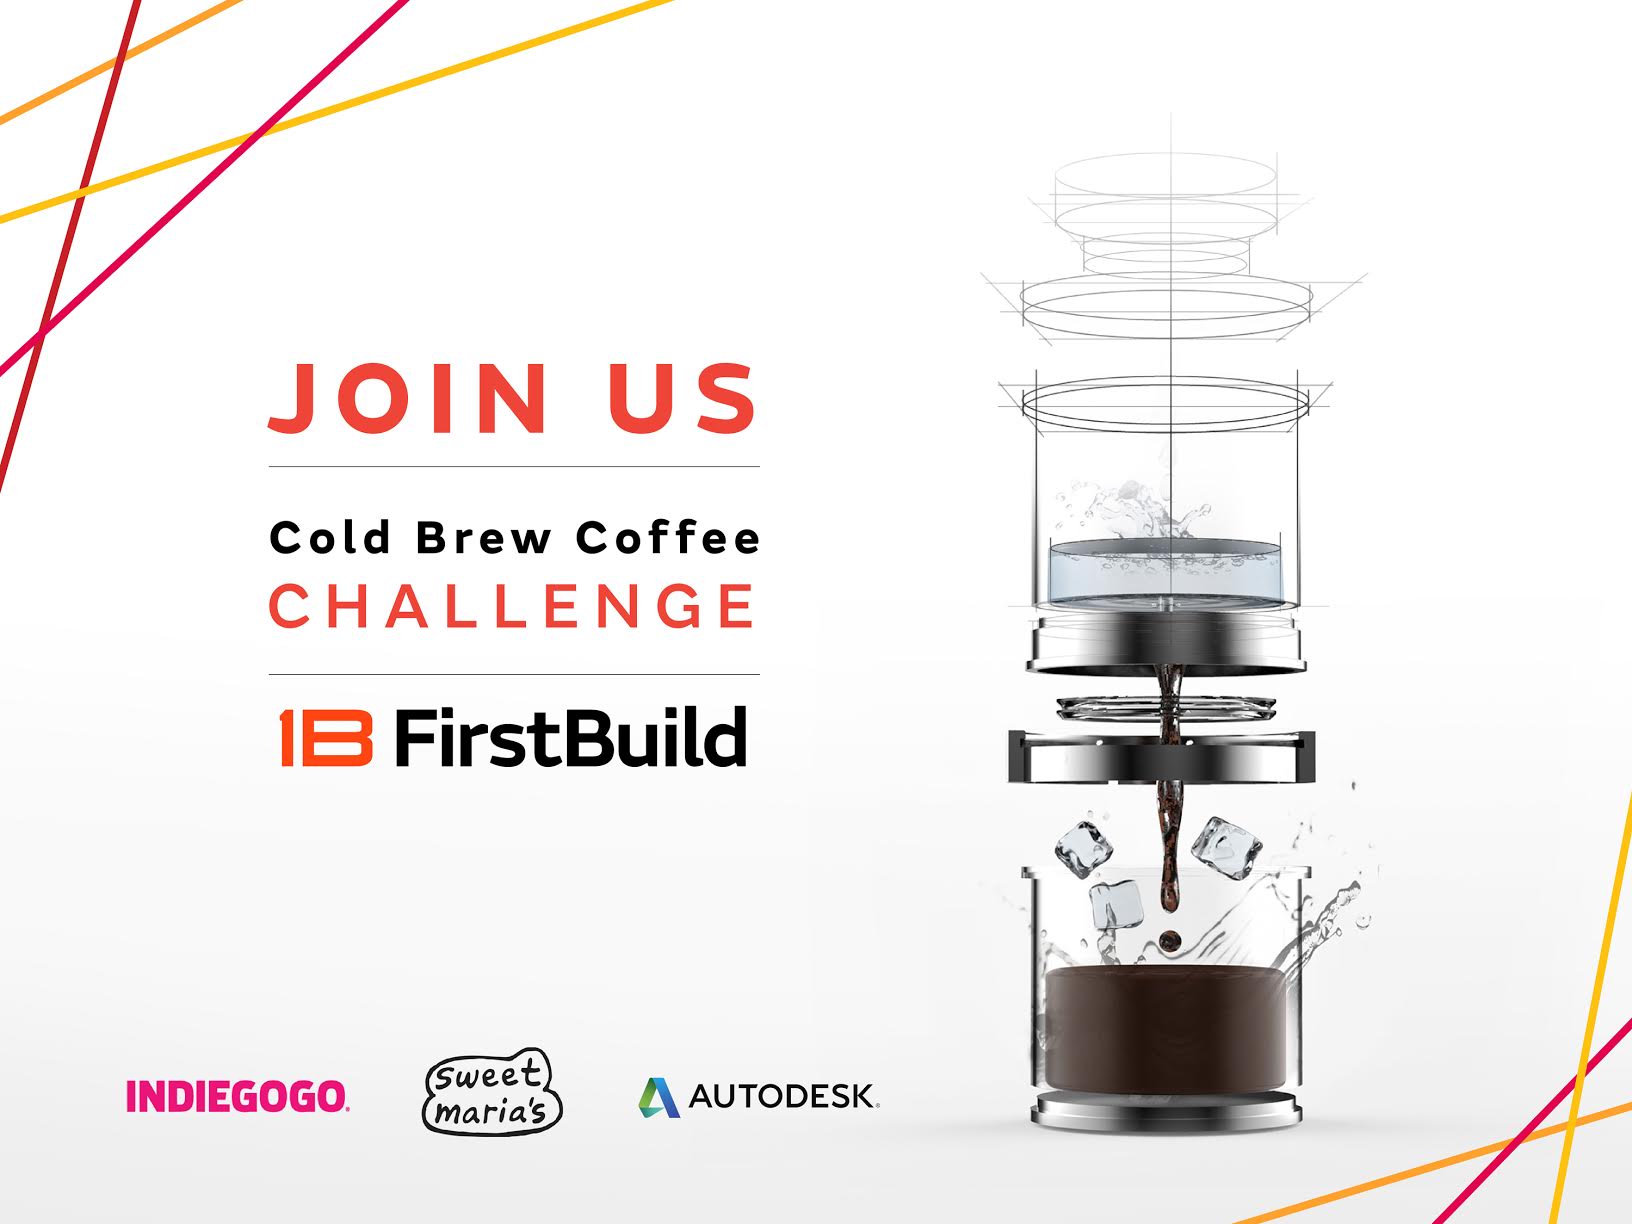 FirstBuild Indiegogo cold brew challenge